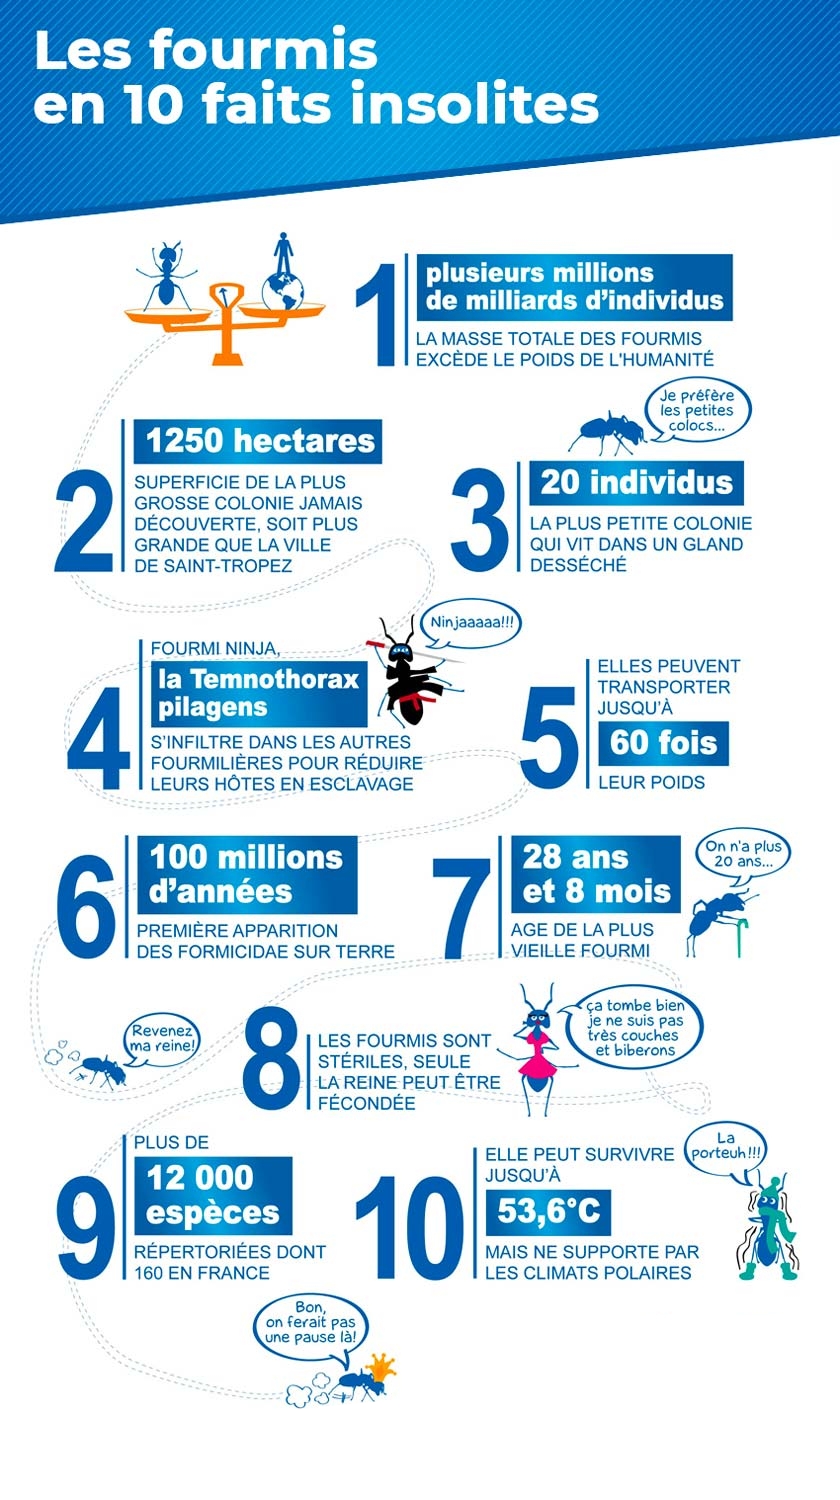 Infographie : 10 faits insolites sur les fourmis